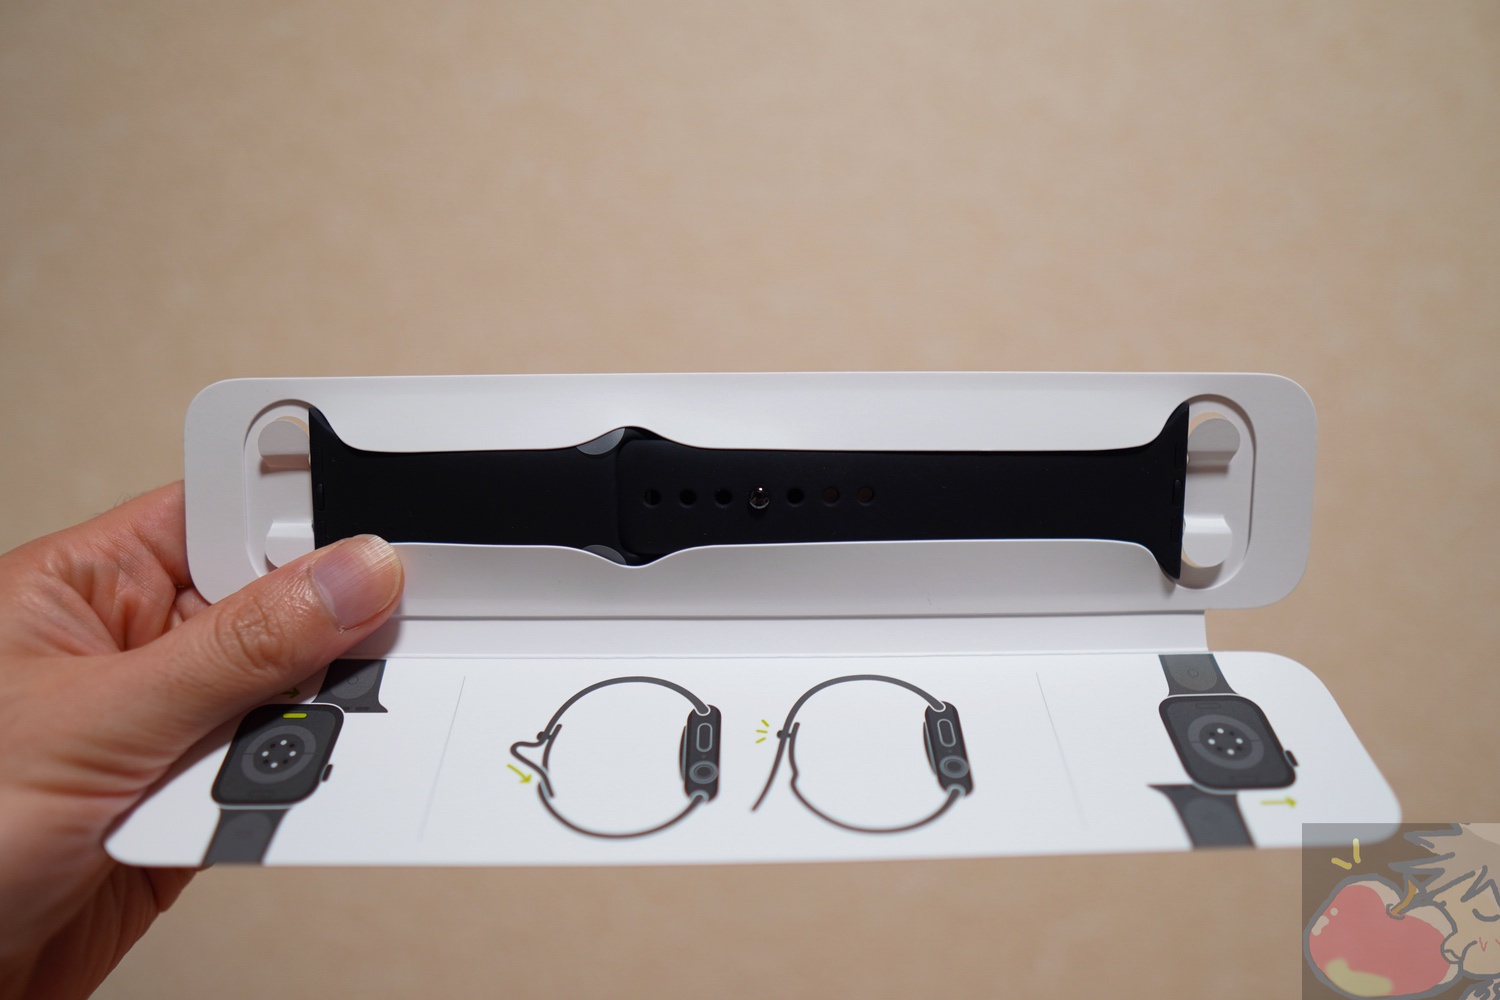 【写真91枚】Apple Watch Series 6 (Hermès) レビュー「4つのメリット、2つのデメリット」 | Apple信者1億